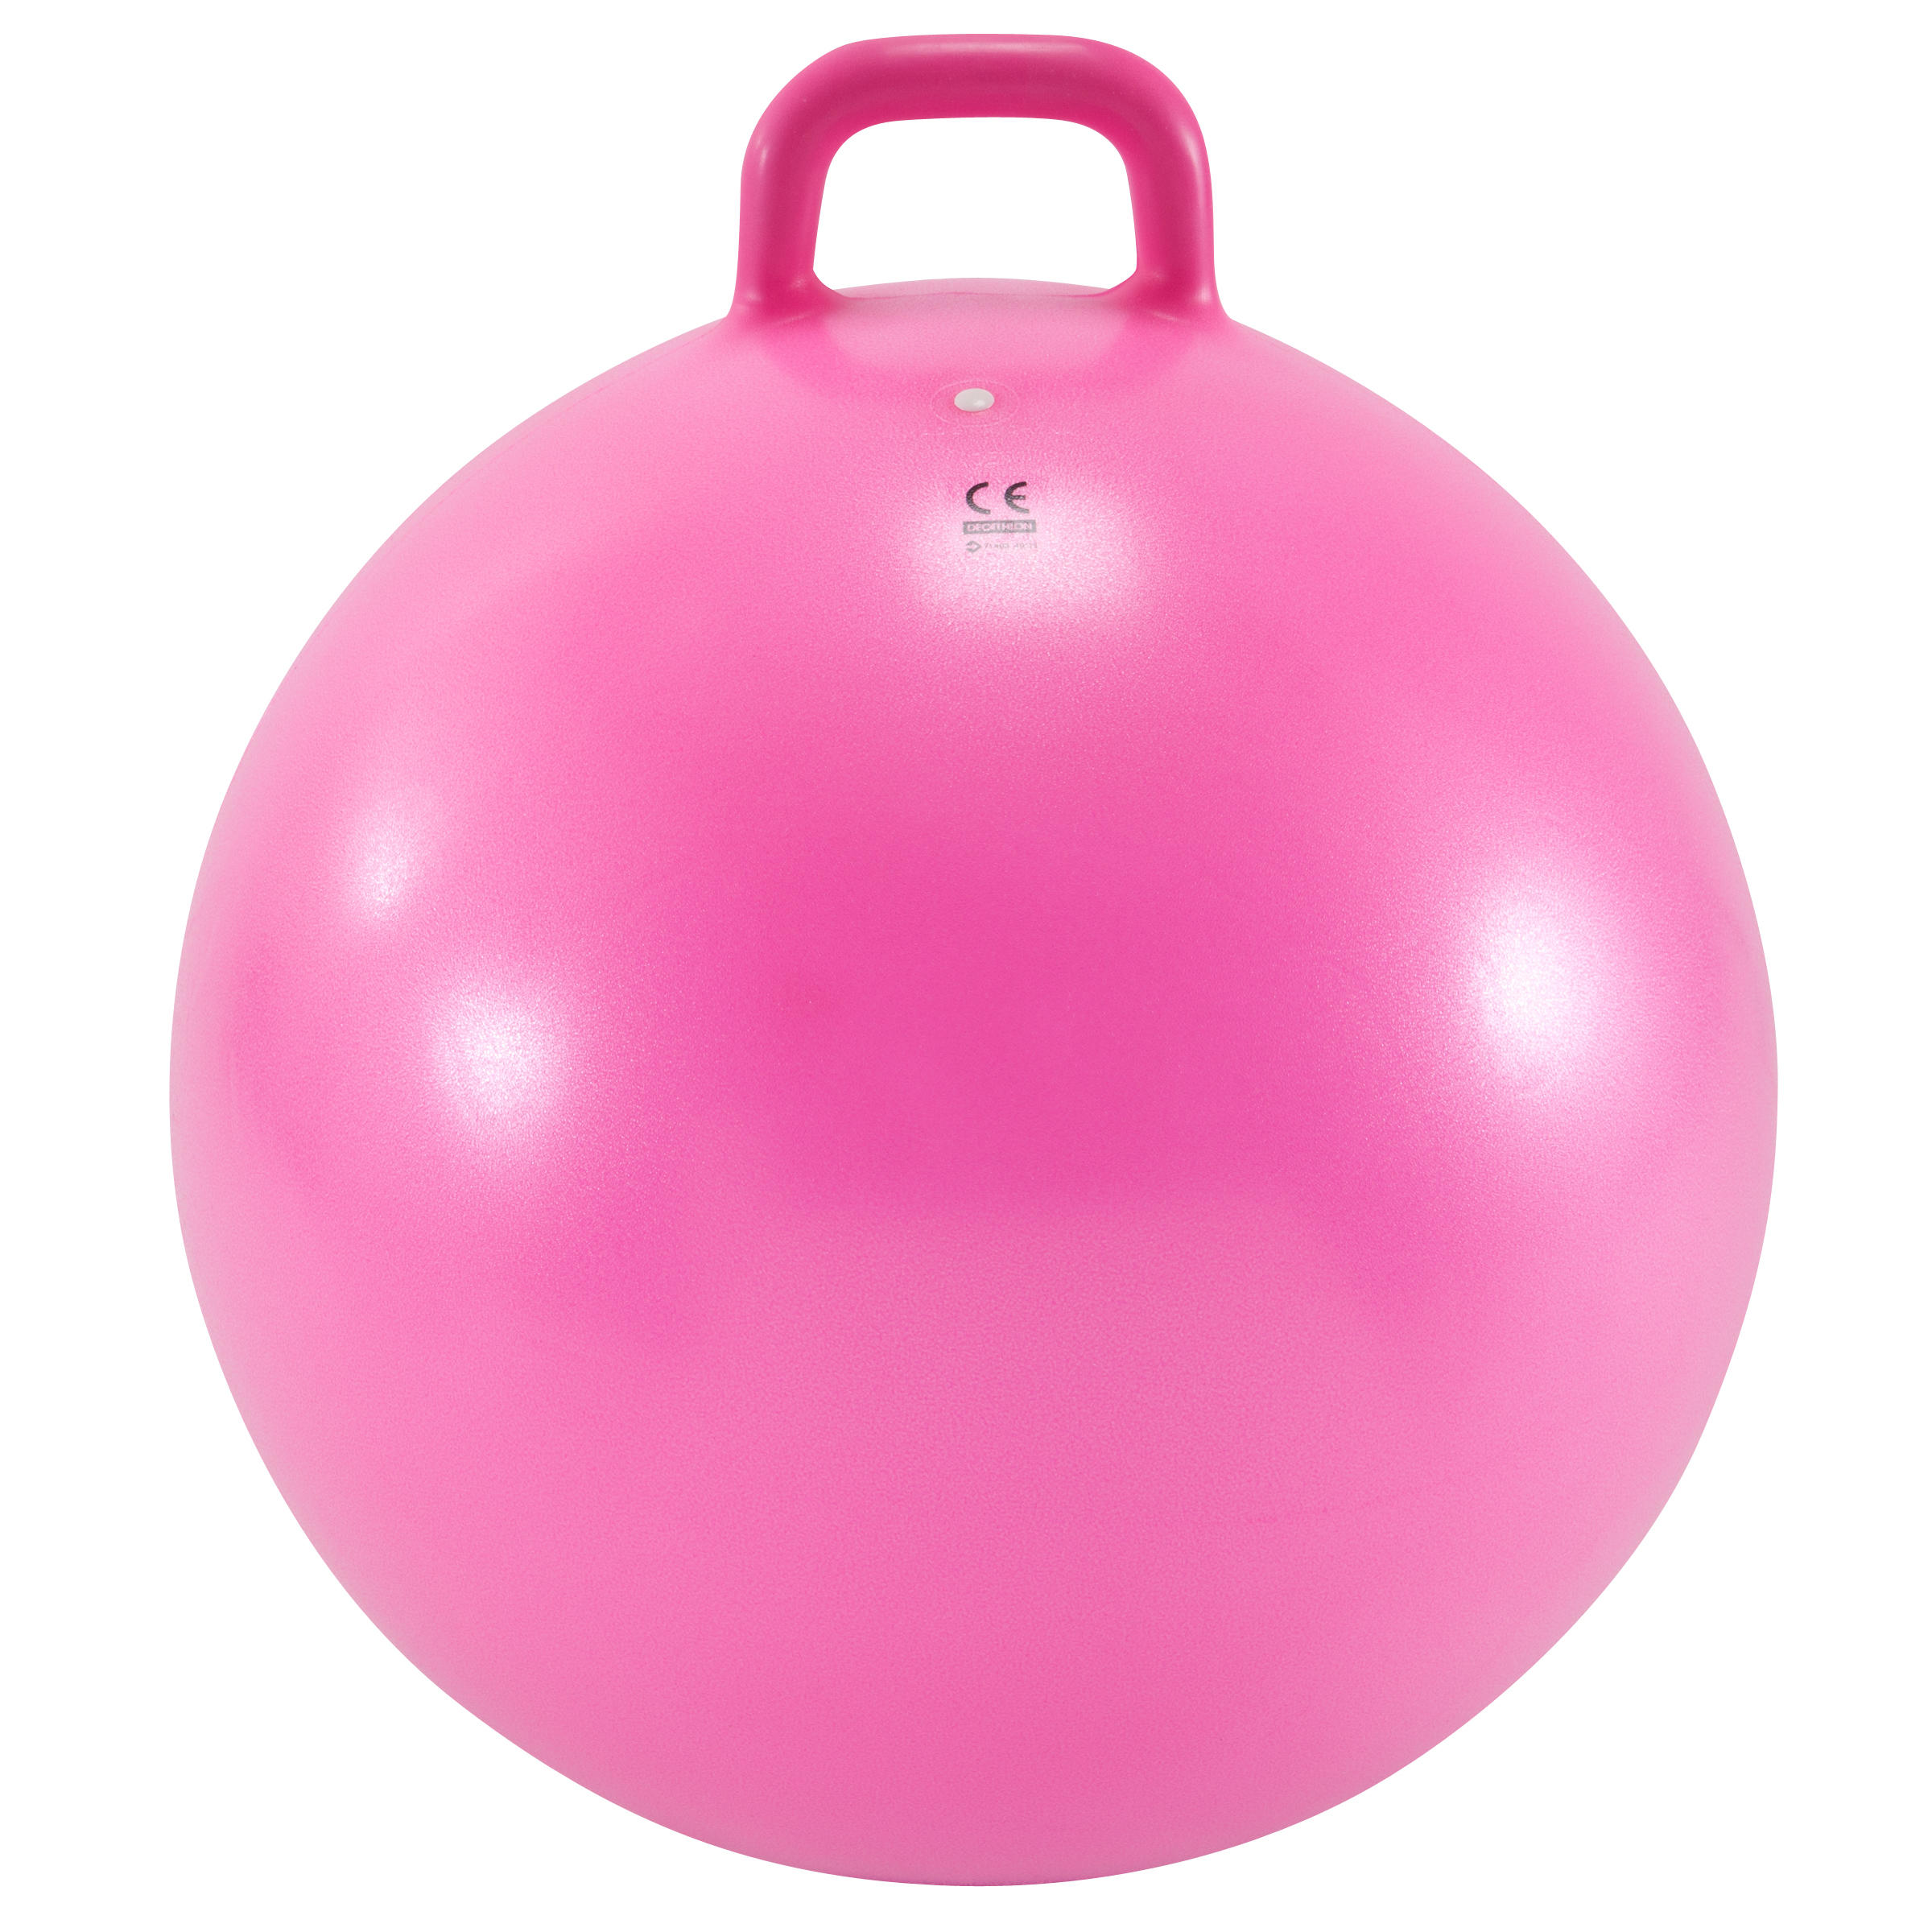 Ballon sauteur enfant - Resist rose - DOMYOS